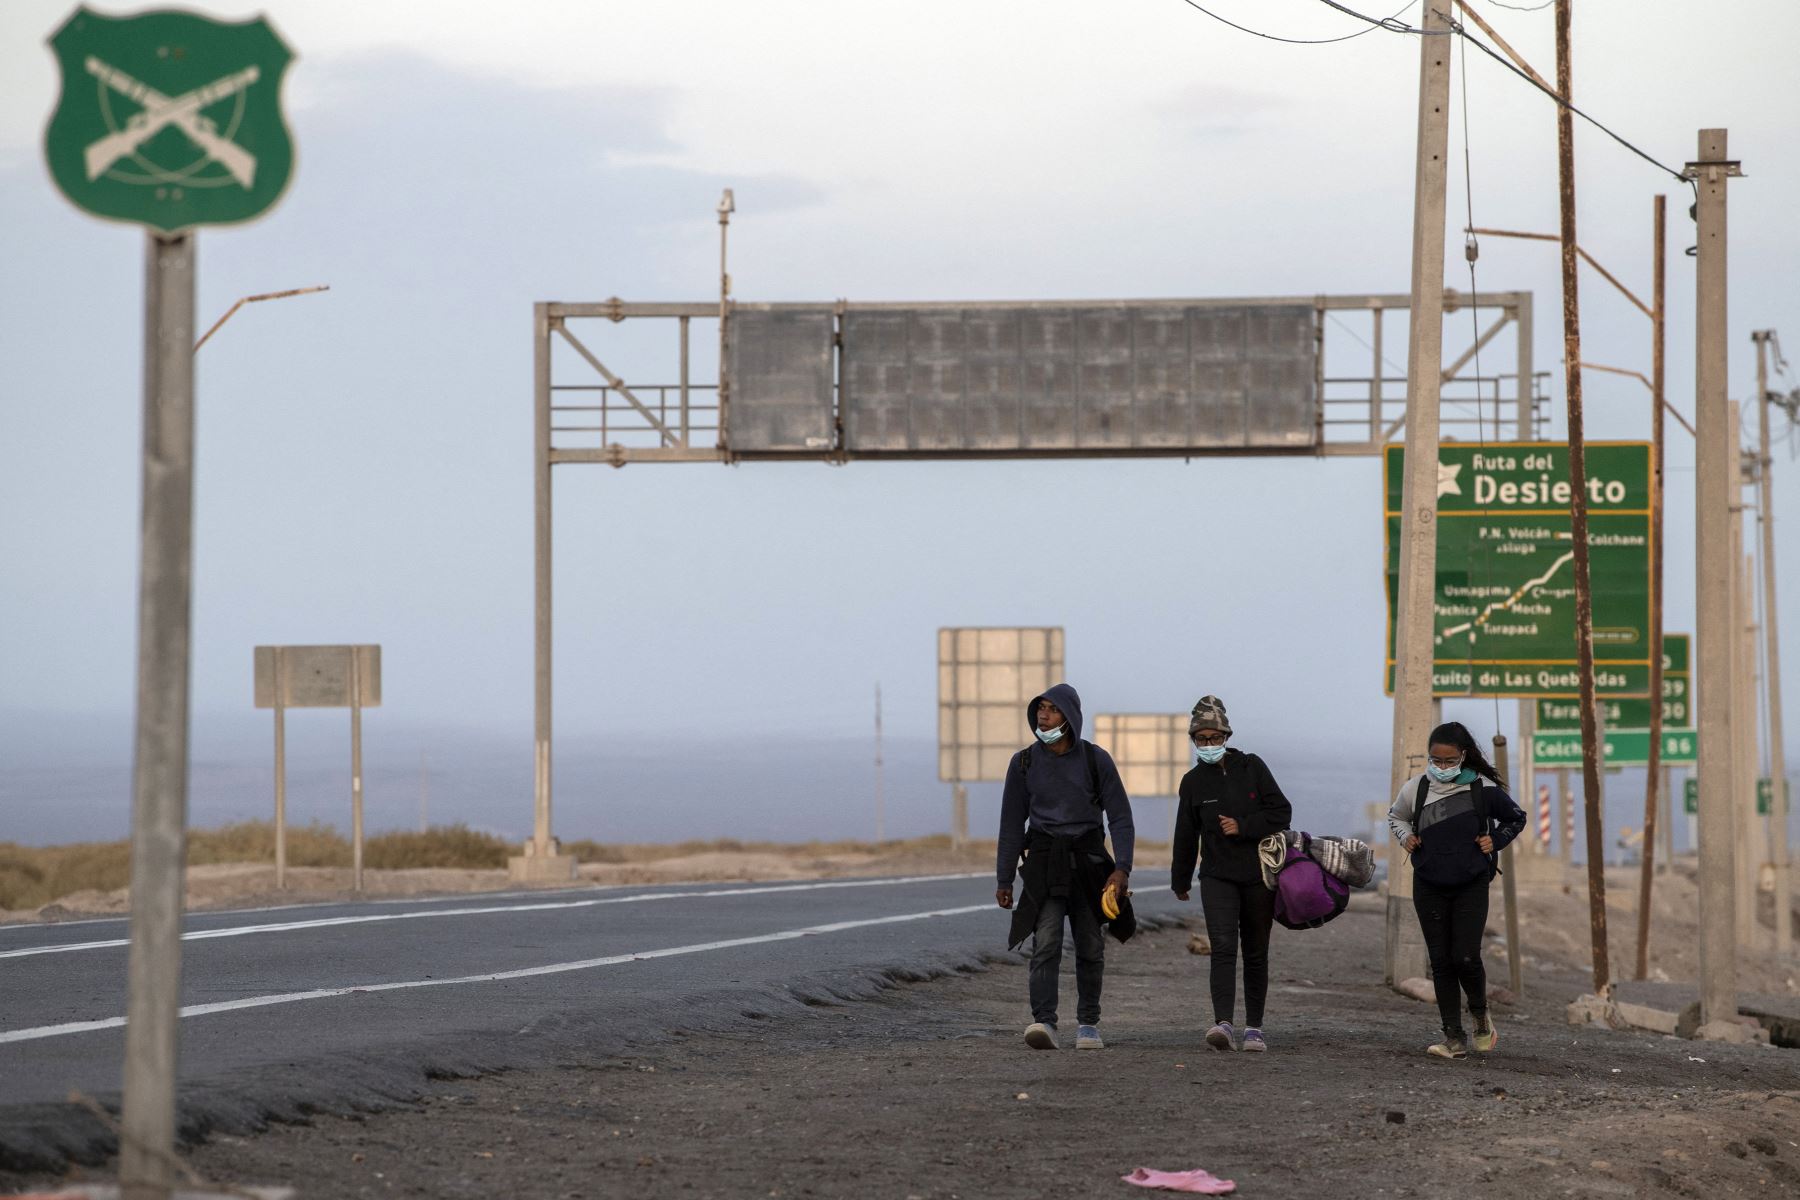 Los migrantes venezolanos Reinaldo, 26, Anyier, 40, y su hija Danyierly, 14, caminan por la carretera camino a Iquique, luego de cruzar desde Bolivia. Foto: AFP